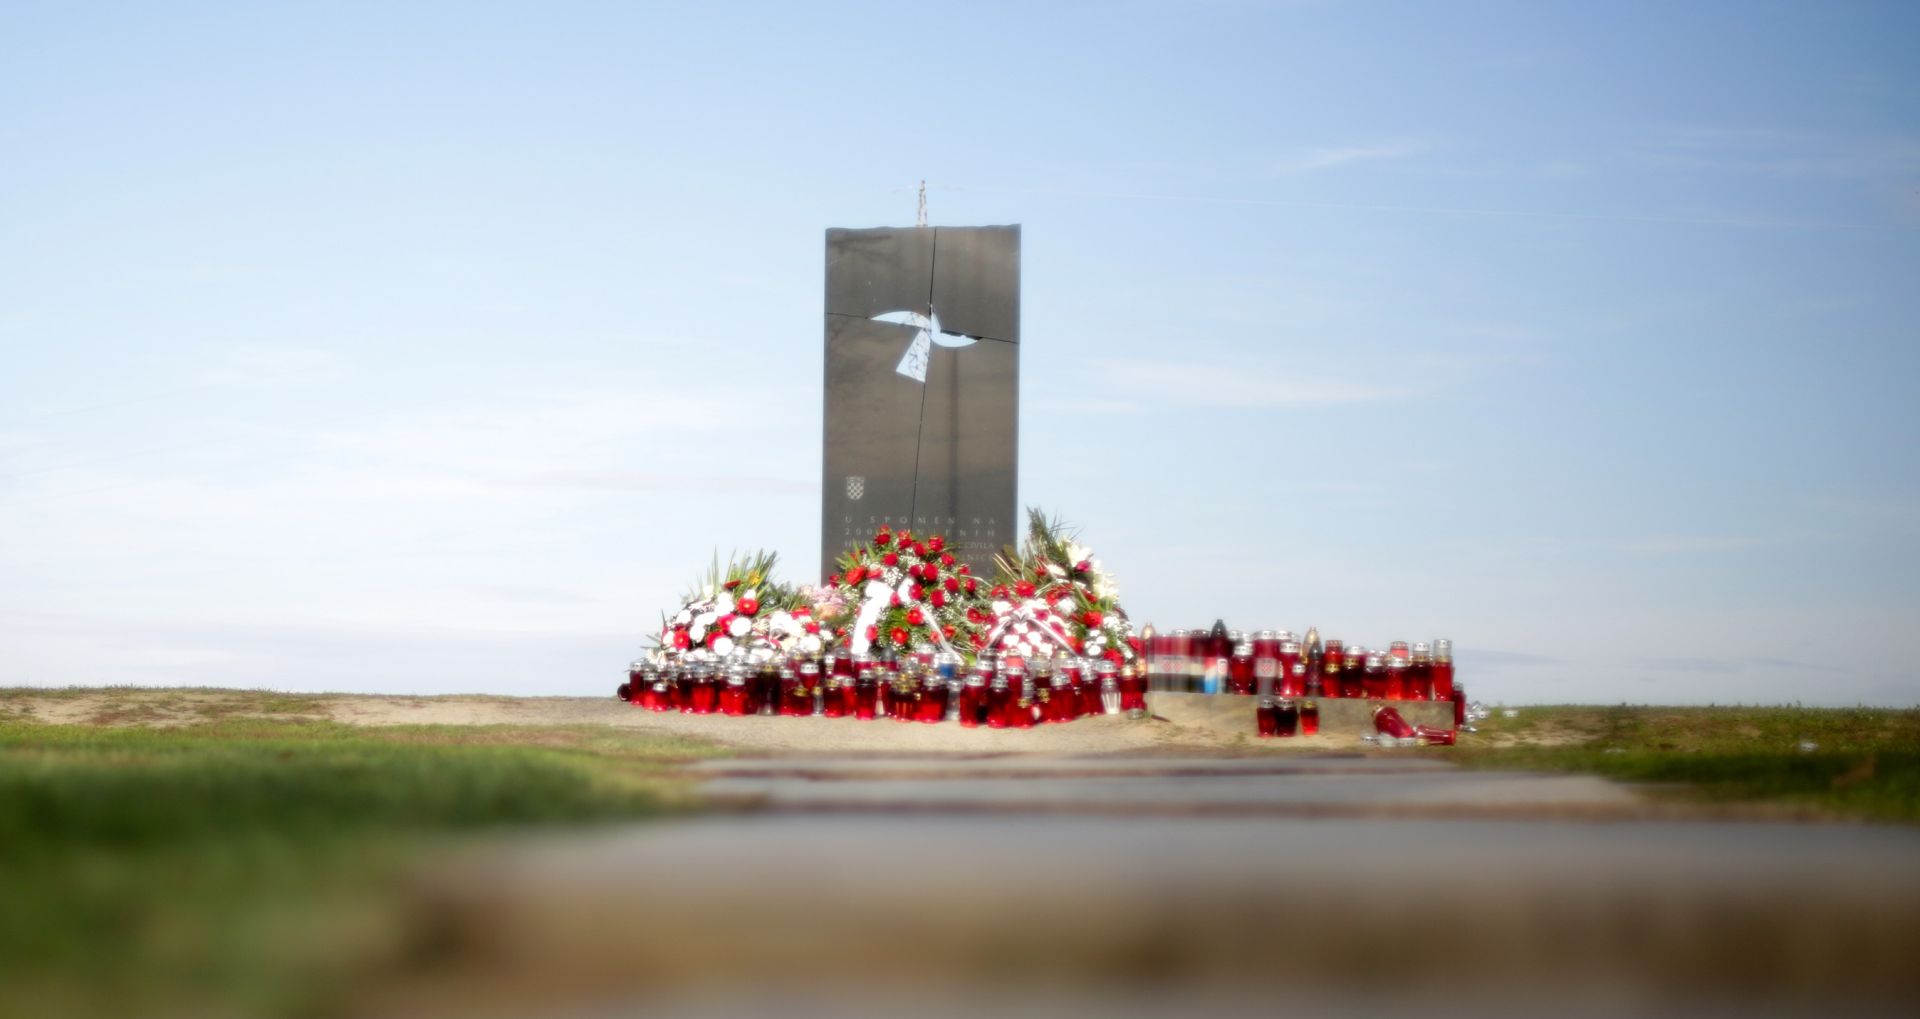 17.11.2015., Vukovar - Ovcara, mjesto masovnog pokolja ranjenika iz vukovarske bolnice, nalazi se na osamljenom mjestu, nekoliko kilometara od sredista Vukovara. Tu je 20. studenoga 1991.g. ubijeno 200 ljudi, nesrpske nacionalnosti. Ranjenici, civili i bolnicko osoblje zajedno su iz Vukovarske bolnice 18. studenoga 1991. godine odvedeni na Ovcaru. Tu su masakrirani, ubijeni vatrenim oruzjem i na istom mjestu njihova tijela nabacana su jedno preko drugog u za to pripremljen rov i pokrivena zemljom. Spomenik na mjestu masovnog pokolja ranjenika. Photo: Grgur Zucko/PIXSELL